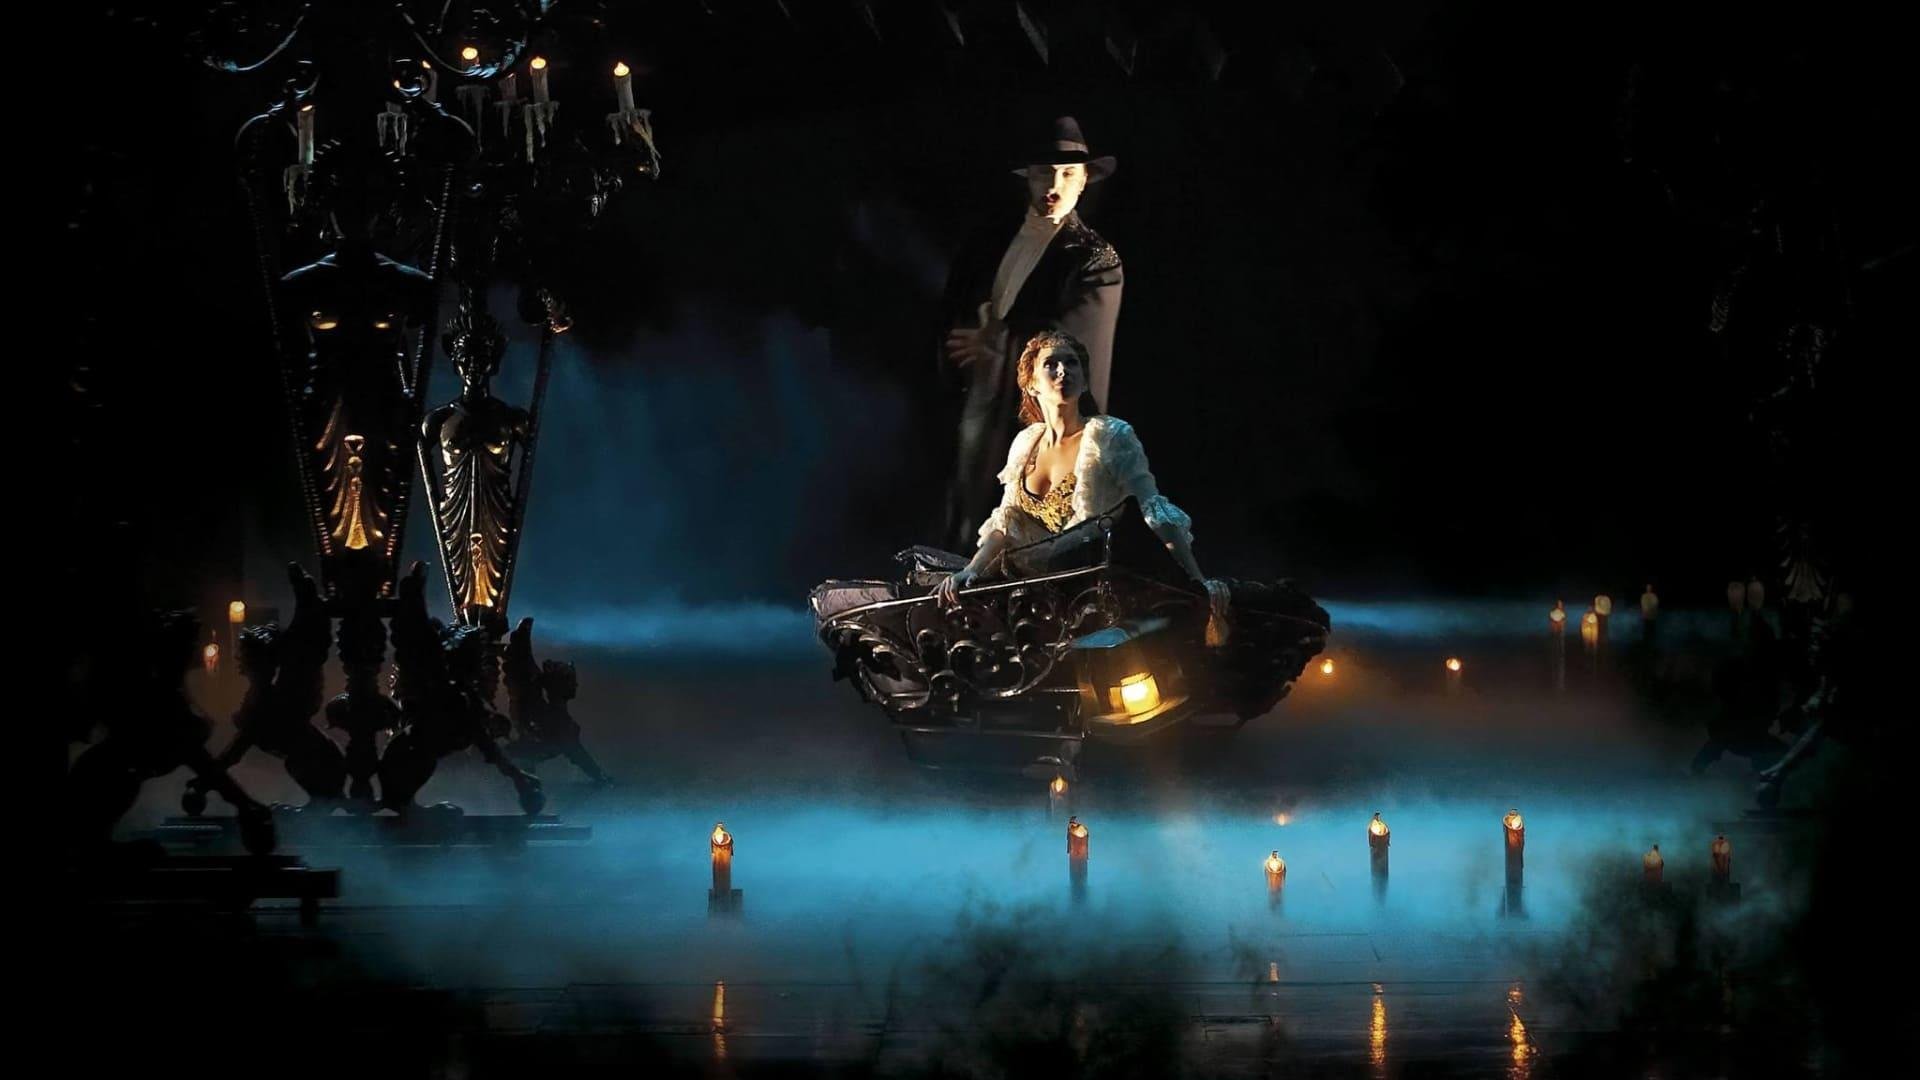 Le fantôme de l'Opéra, personnage du roman de Gaston Leroux, hante le lac souterrain de l'opéra Garnier, proche du Gramont